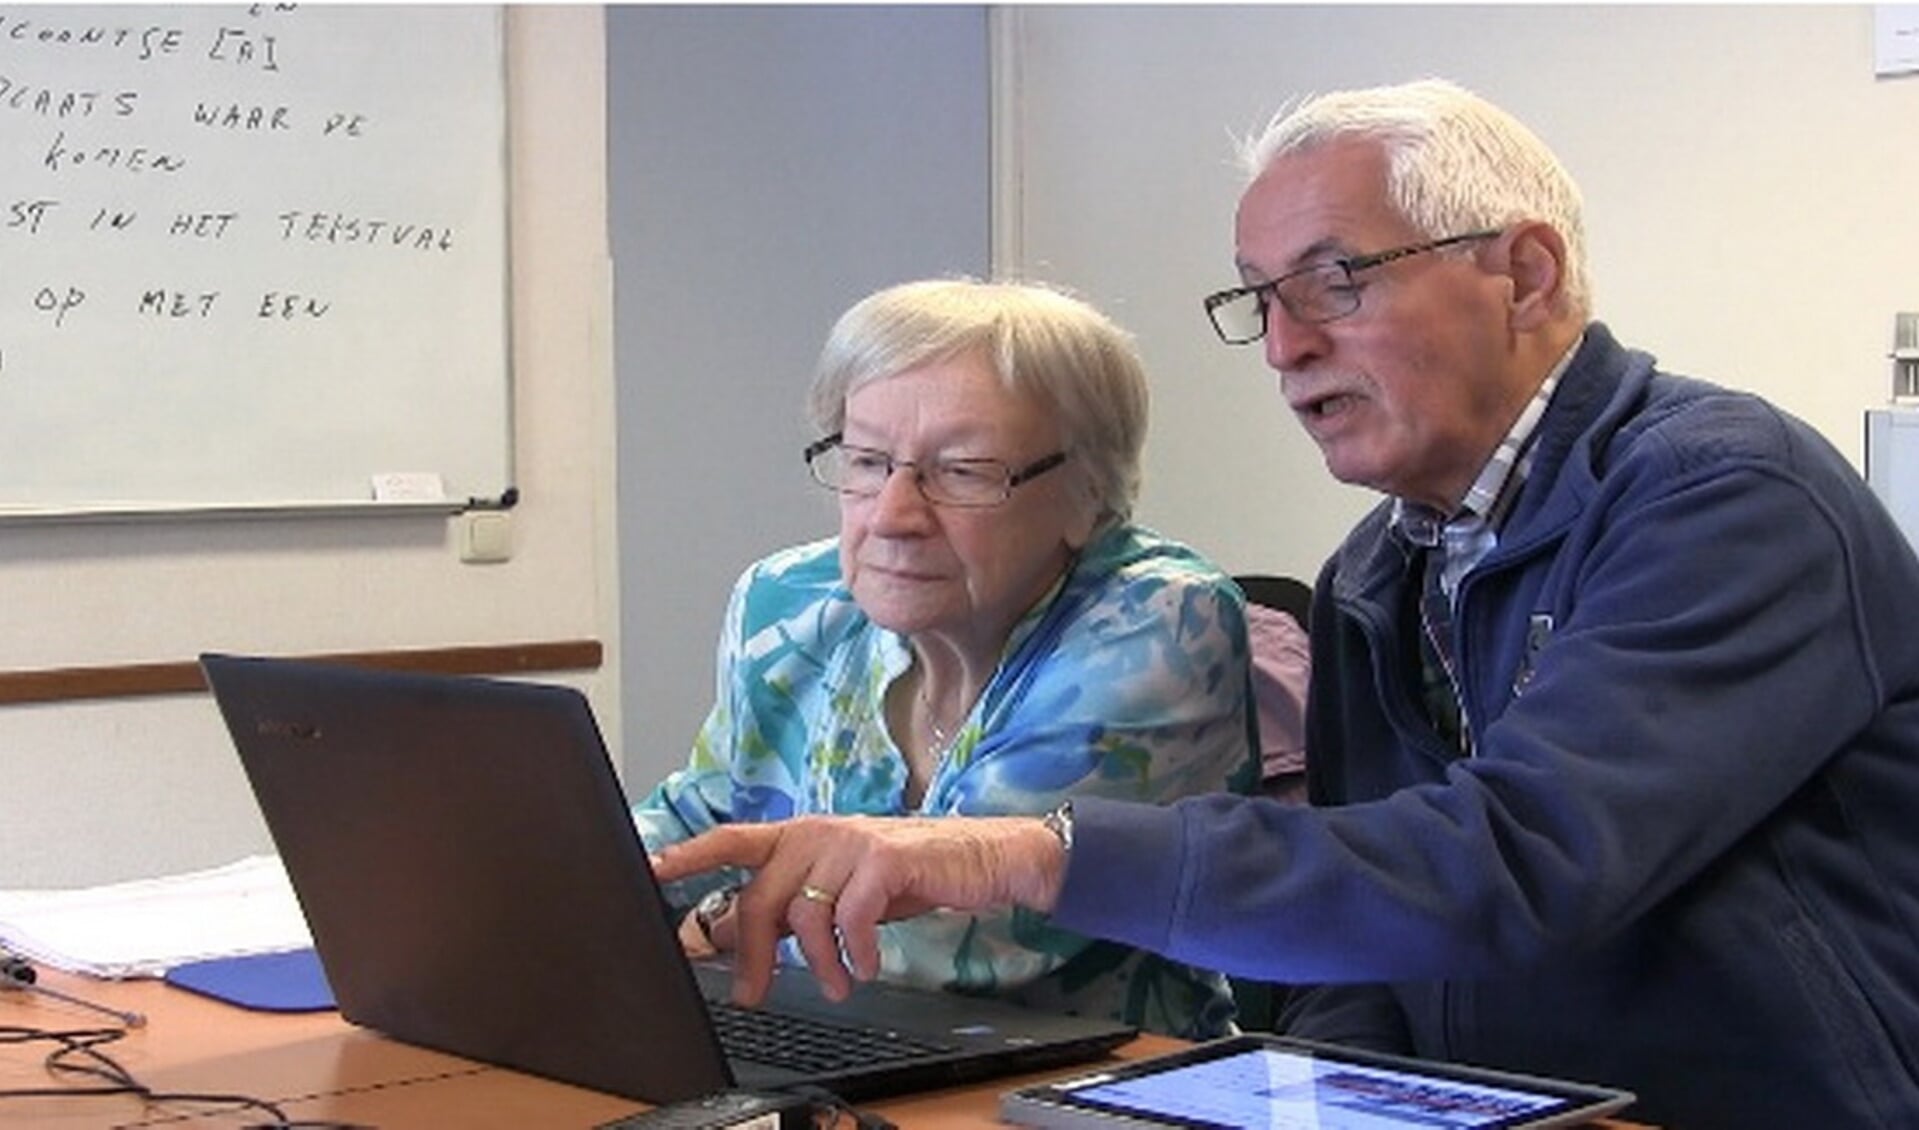 Mediatrefpunt Arnhem Zuid helpt senioren op weg naar meer digitale zelfstandigheid.